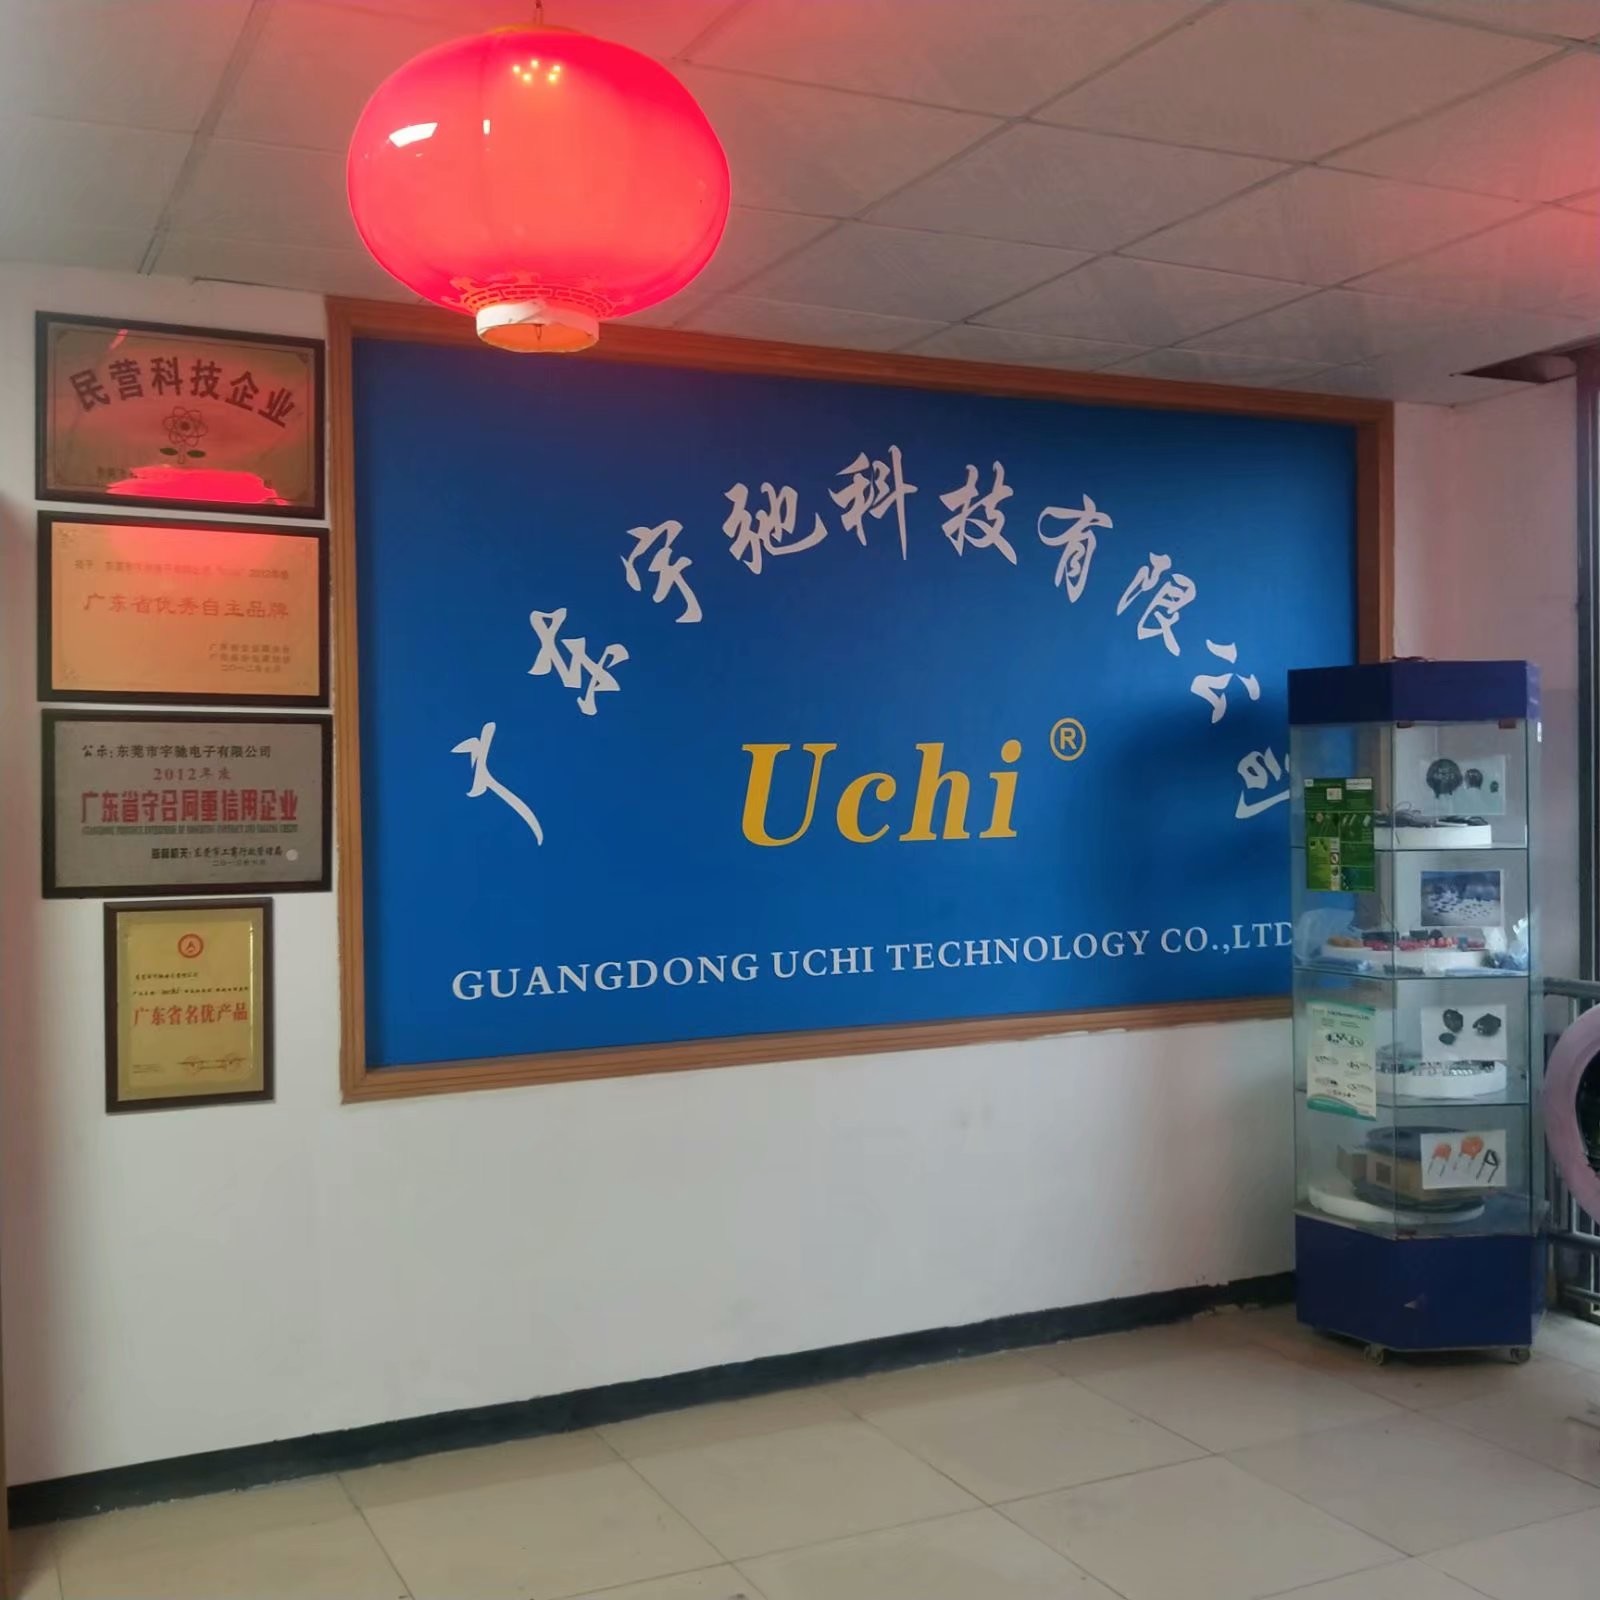 China Guangdong Uchi Technology Co.,Ltd